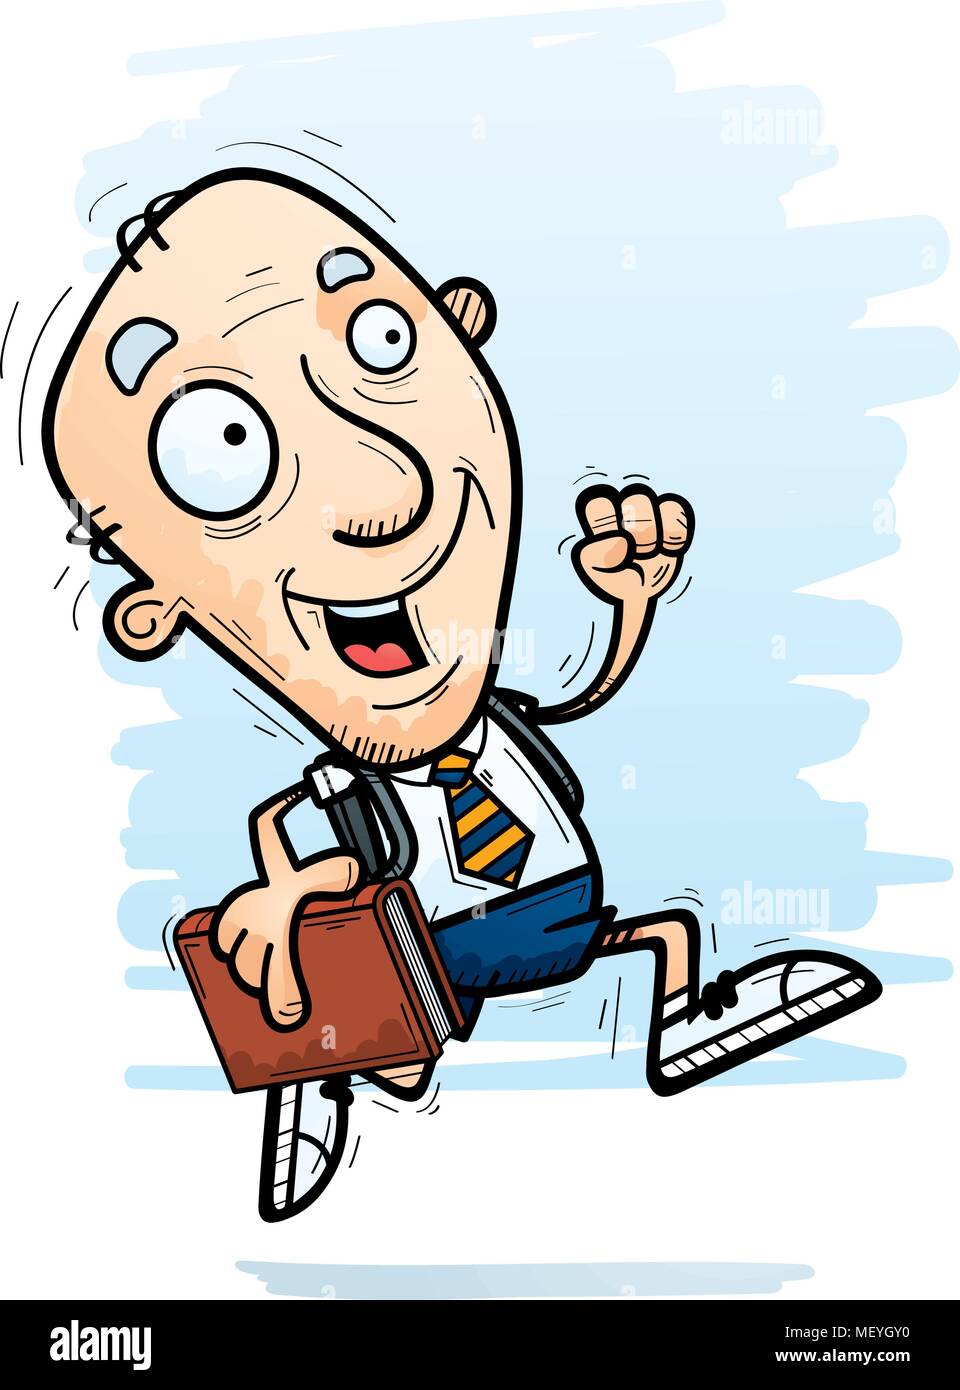 A cartoon illustration of a senior citizen man student running. Stock Vector